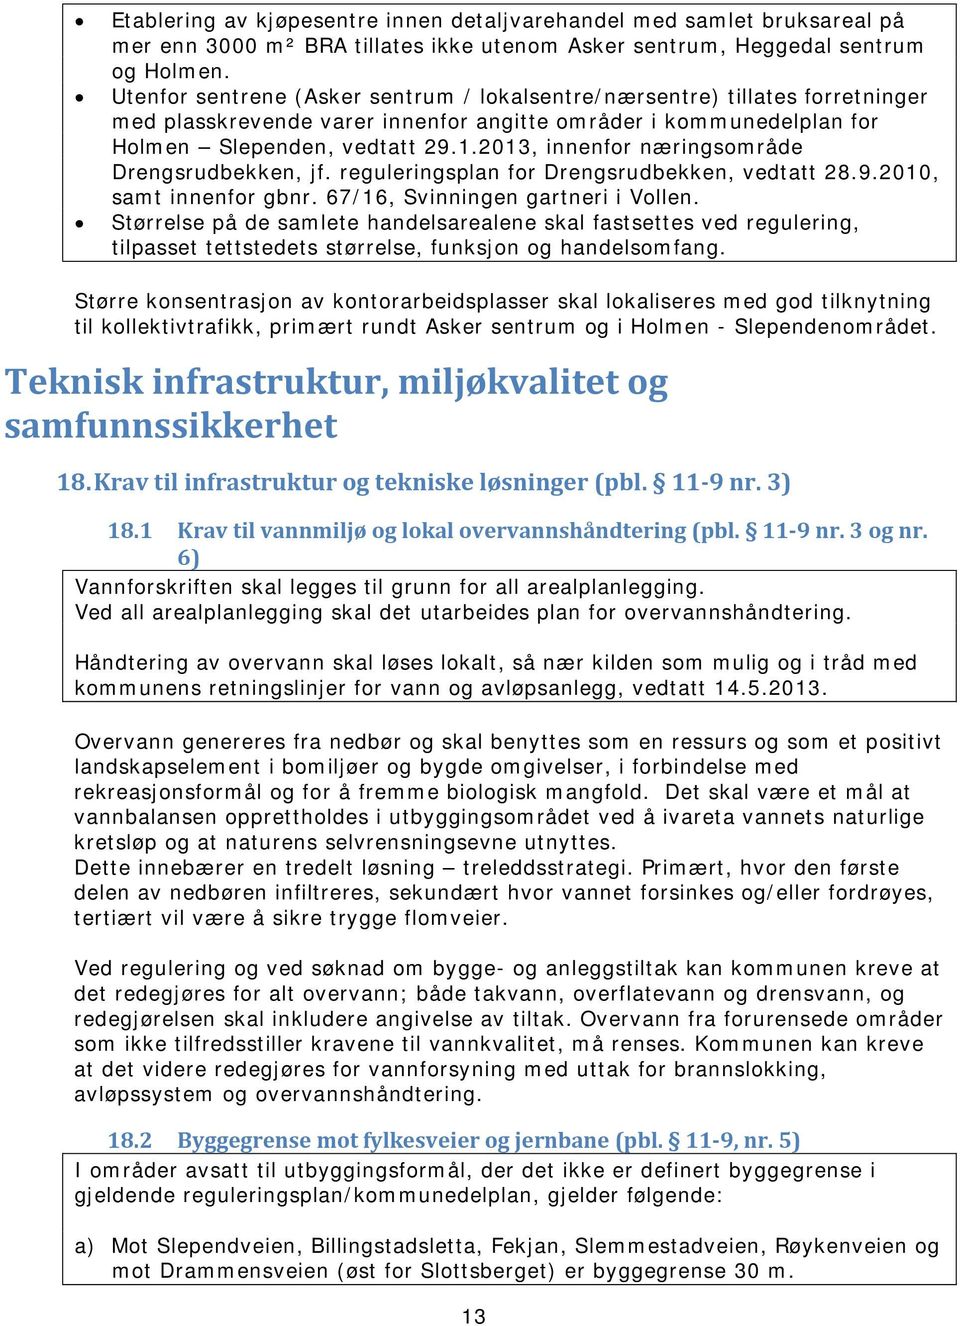 2013, innenfor næringsområde Drengsrudbekken, jf. reguleringsplan for Drengsrudbekken, vedtatt 28.9.2010, samt innenfor gbnr. 67/16, Svinningen gartneri i Vollen.